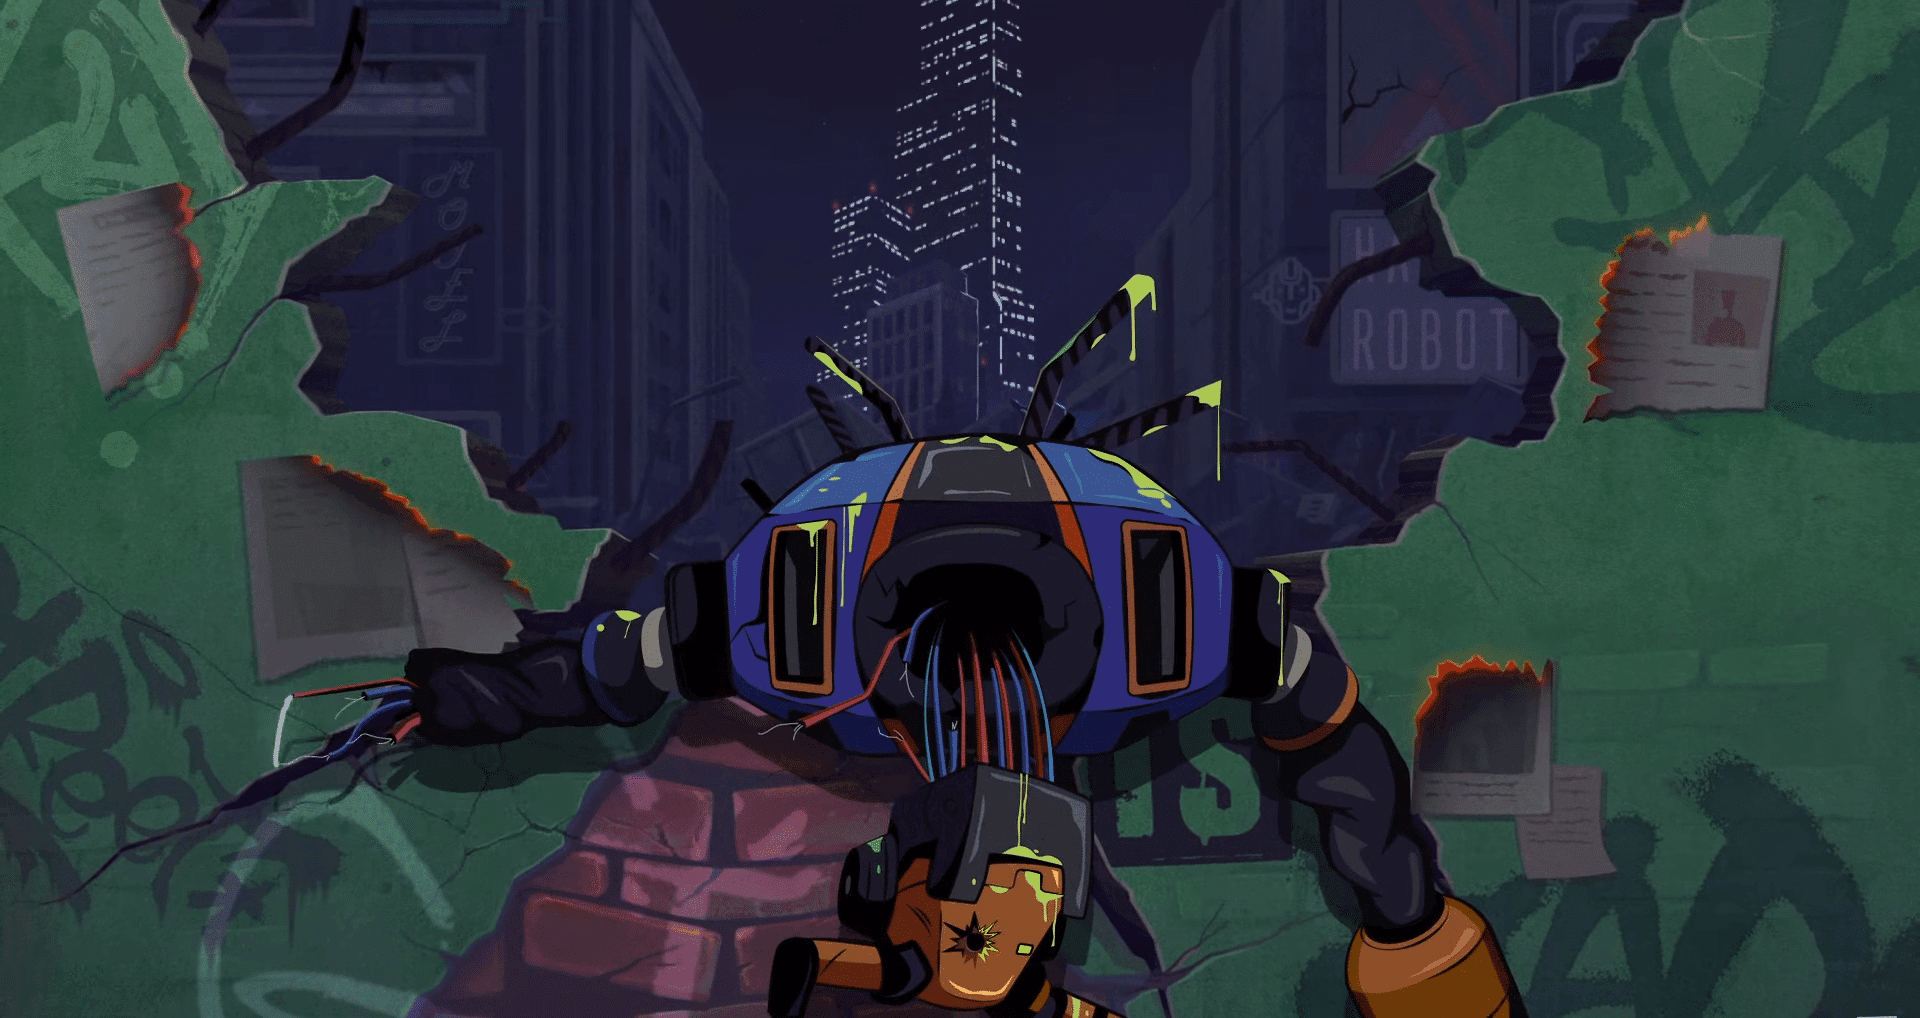 Drunk Robots, un juego de rol NFT de BNB Chain, sumerge a los jugadores en la ciudad post-apocalíptica de Los Machines en una acción emocionante.